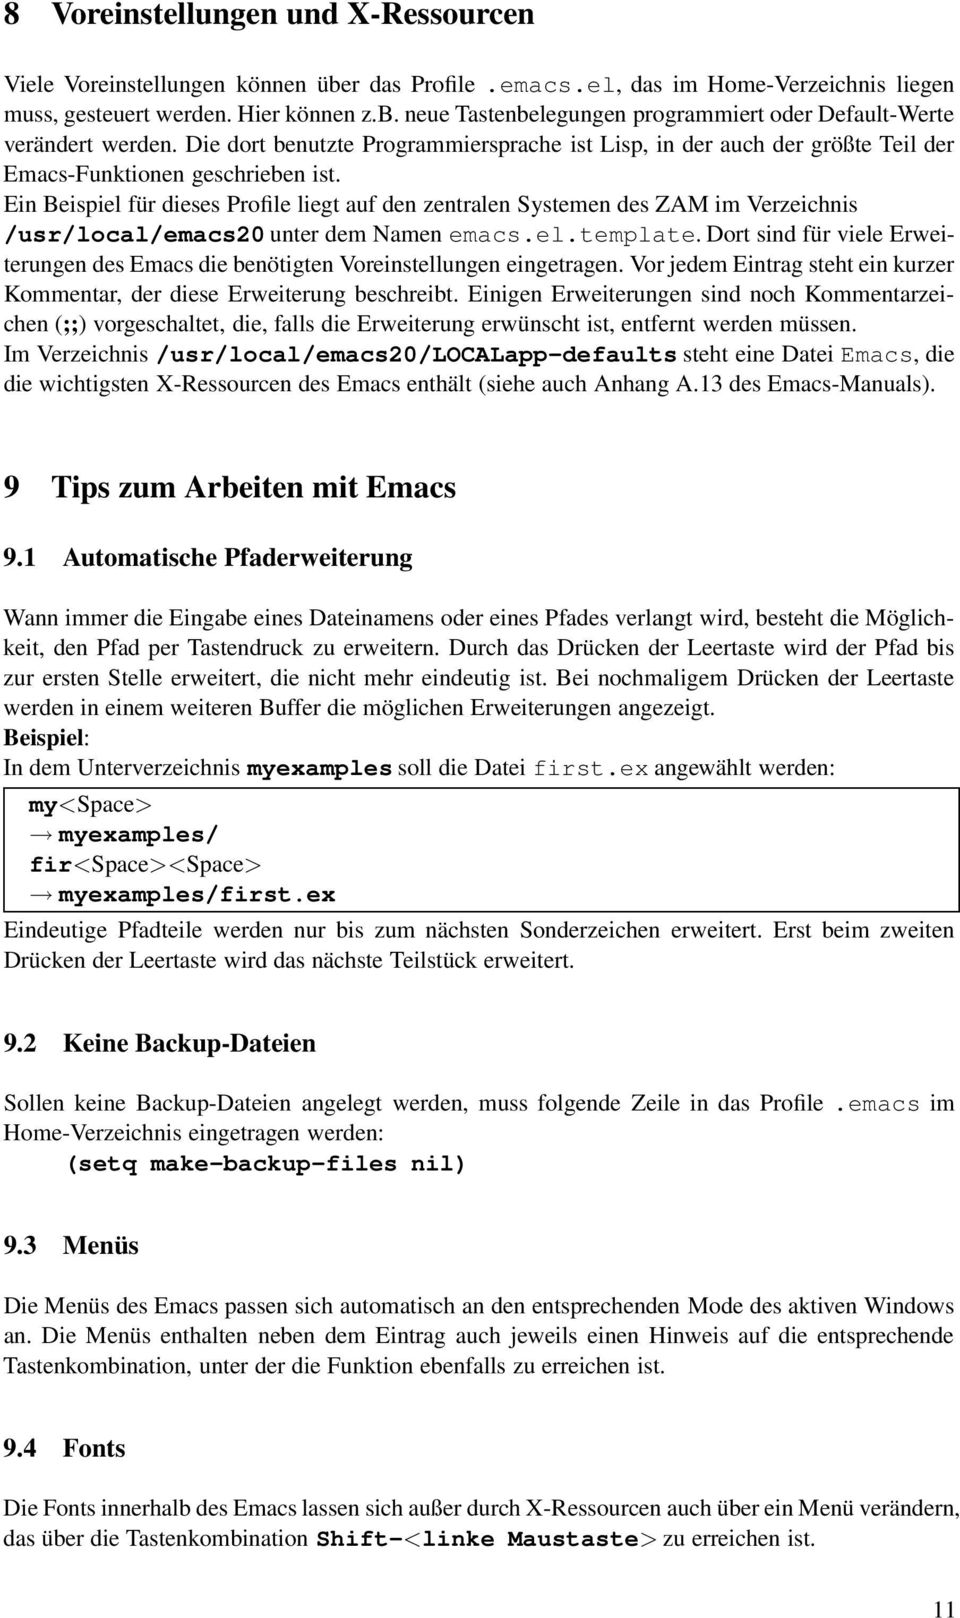 Ein Beispiel für dieses Profile liegt auf den zentralen Systemen des ZAM im Verzeichnis /usr/local/emacs20 unter dem Namen emacs.el.template.